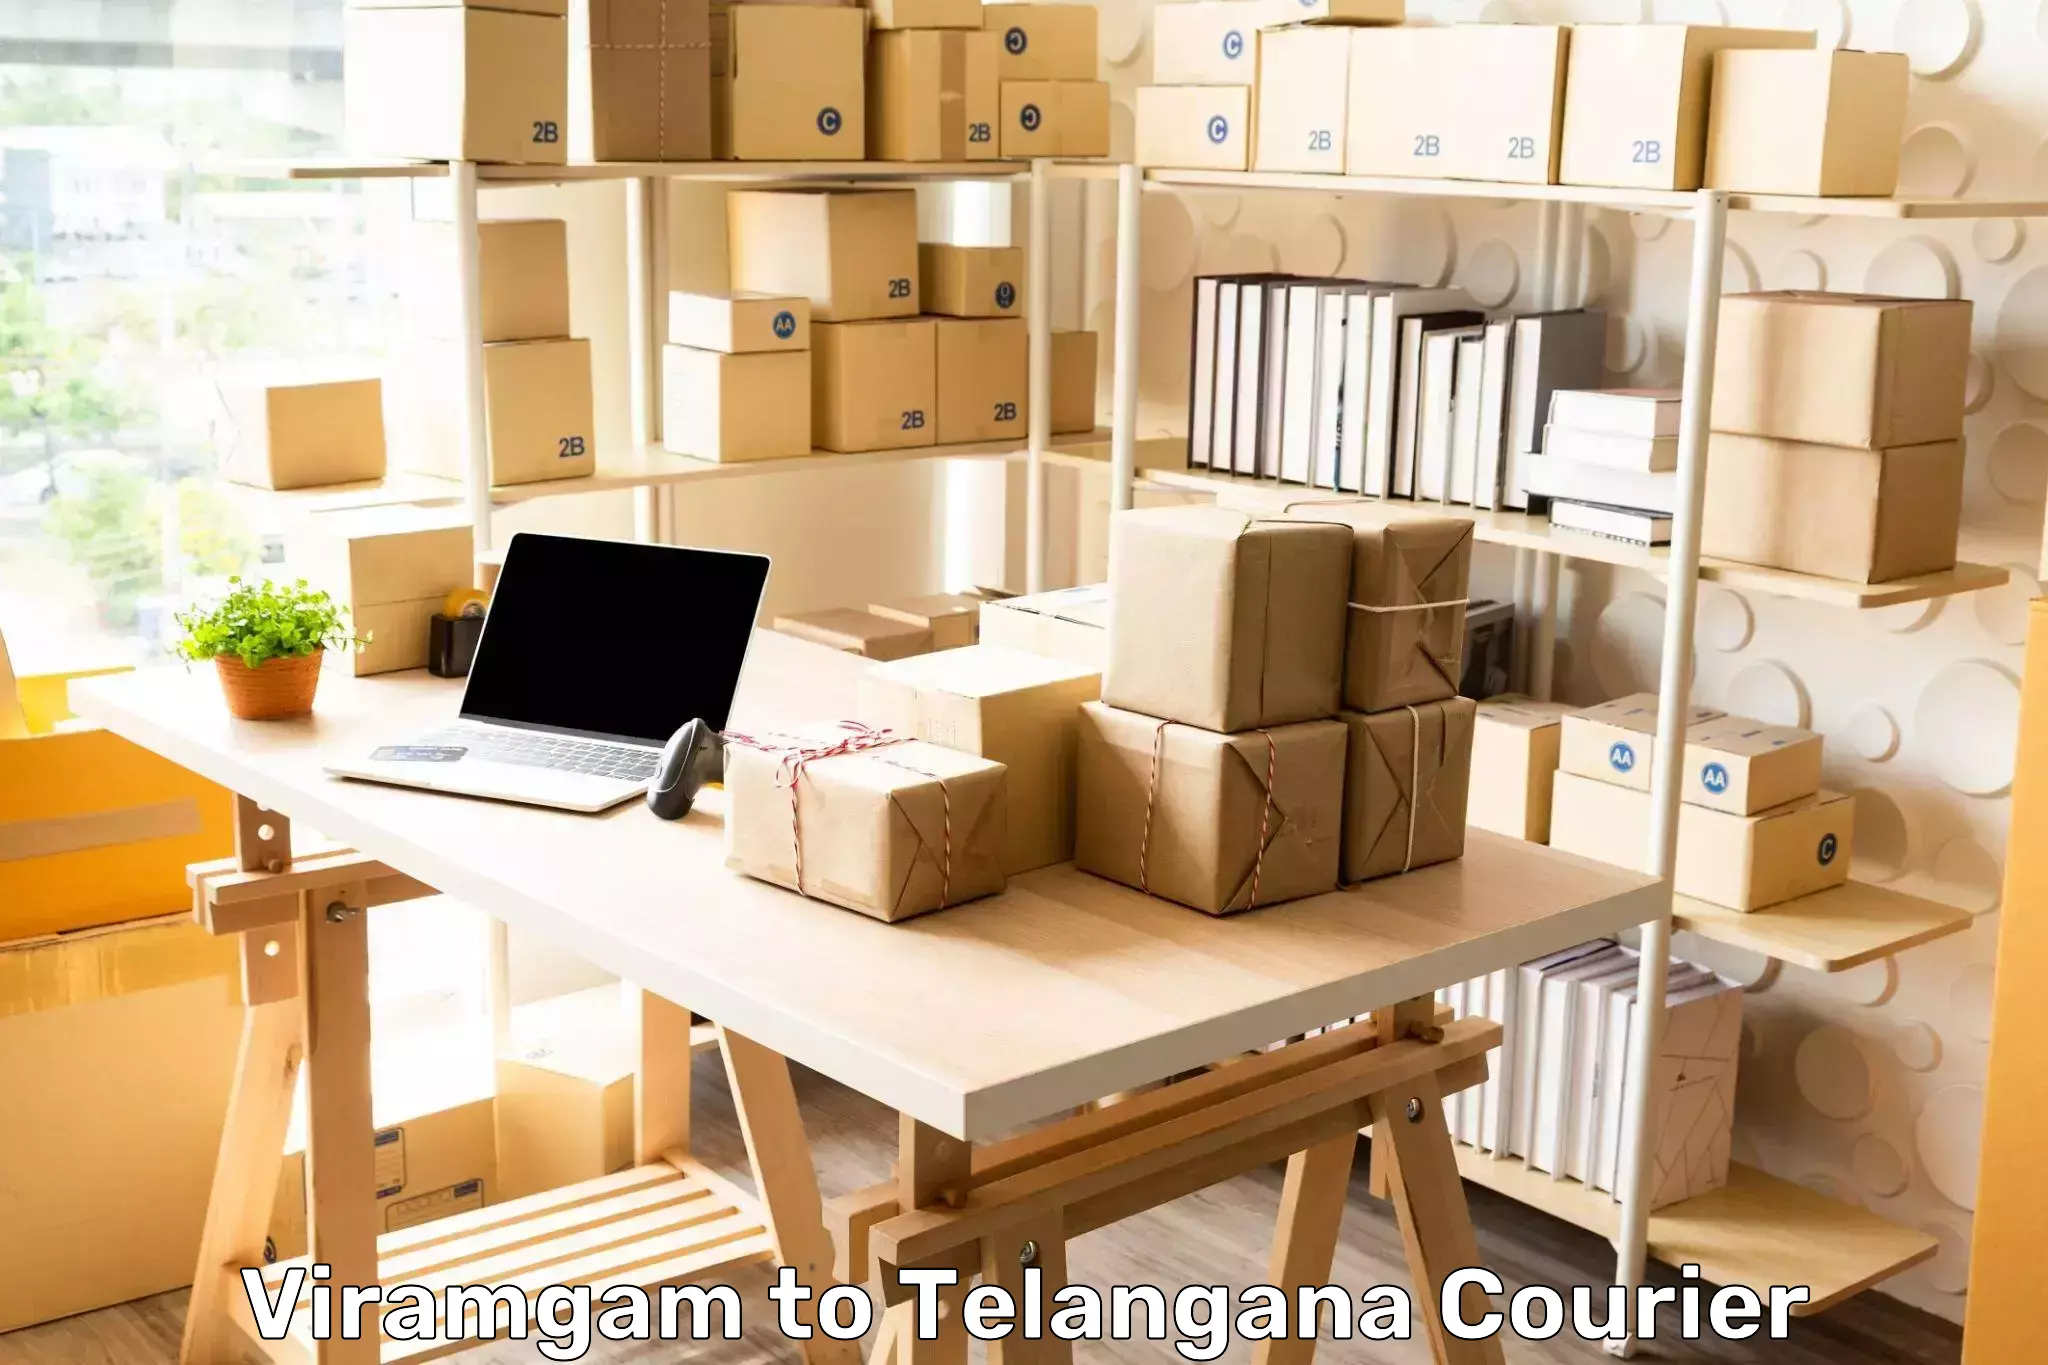 Premium courier solutions in Viramgam to Mudigonda